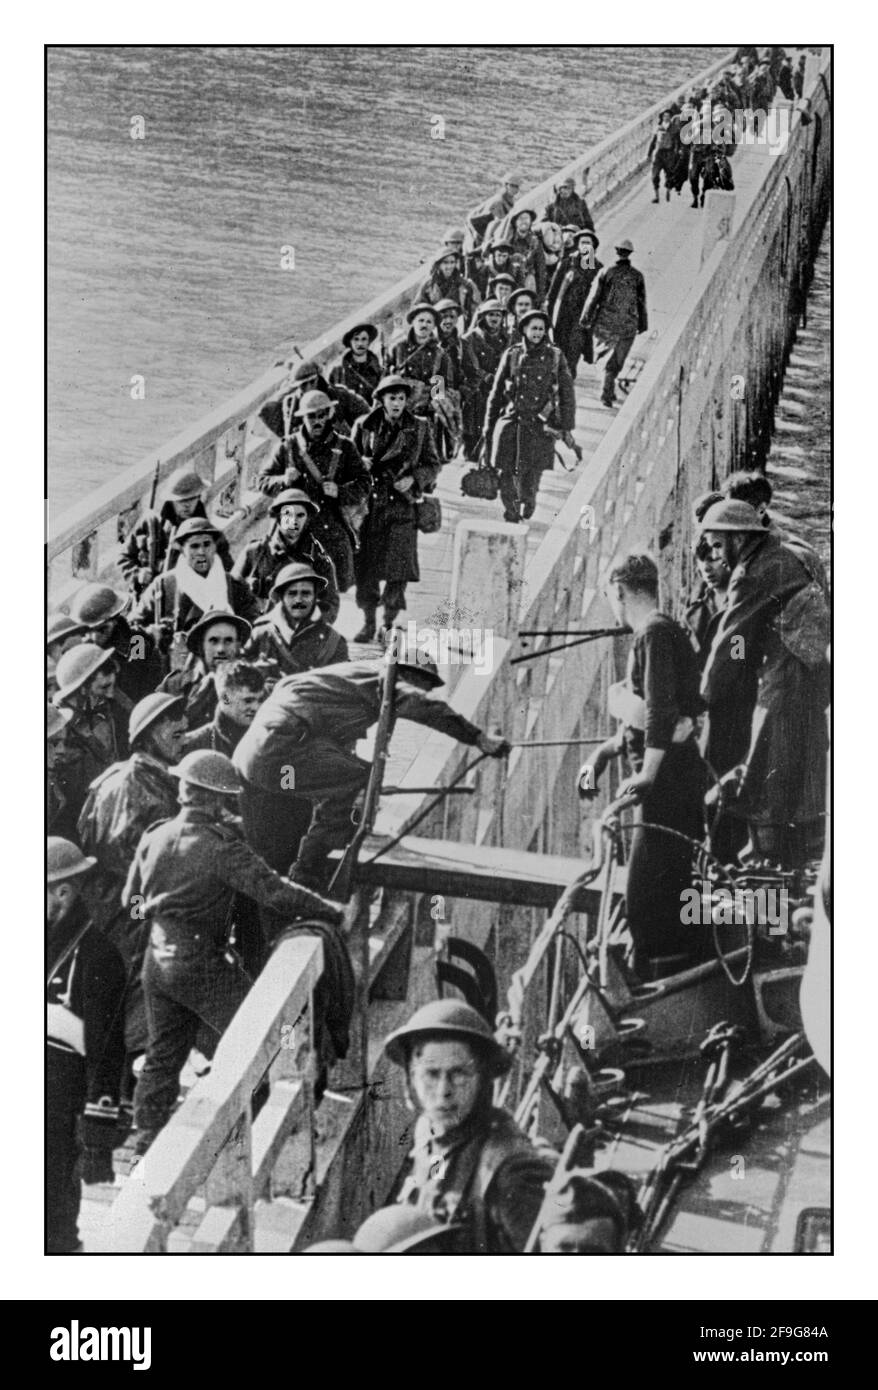 WW2 EVACUAZIONE DI DUNKERQUE IL 4 giugno 1940, il primo ministro Winston Churchill ha acclamato l'evacuazione di Dunkerque come un 'miracolo di liberazione'. L'operazione Dynamo salvò più di 300,000 coraggiose truppe alleate dall'essere uccise o imprigionate occupando nazisti in Francia, Olanda e Belgio Foto Stock